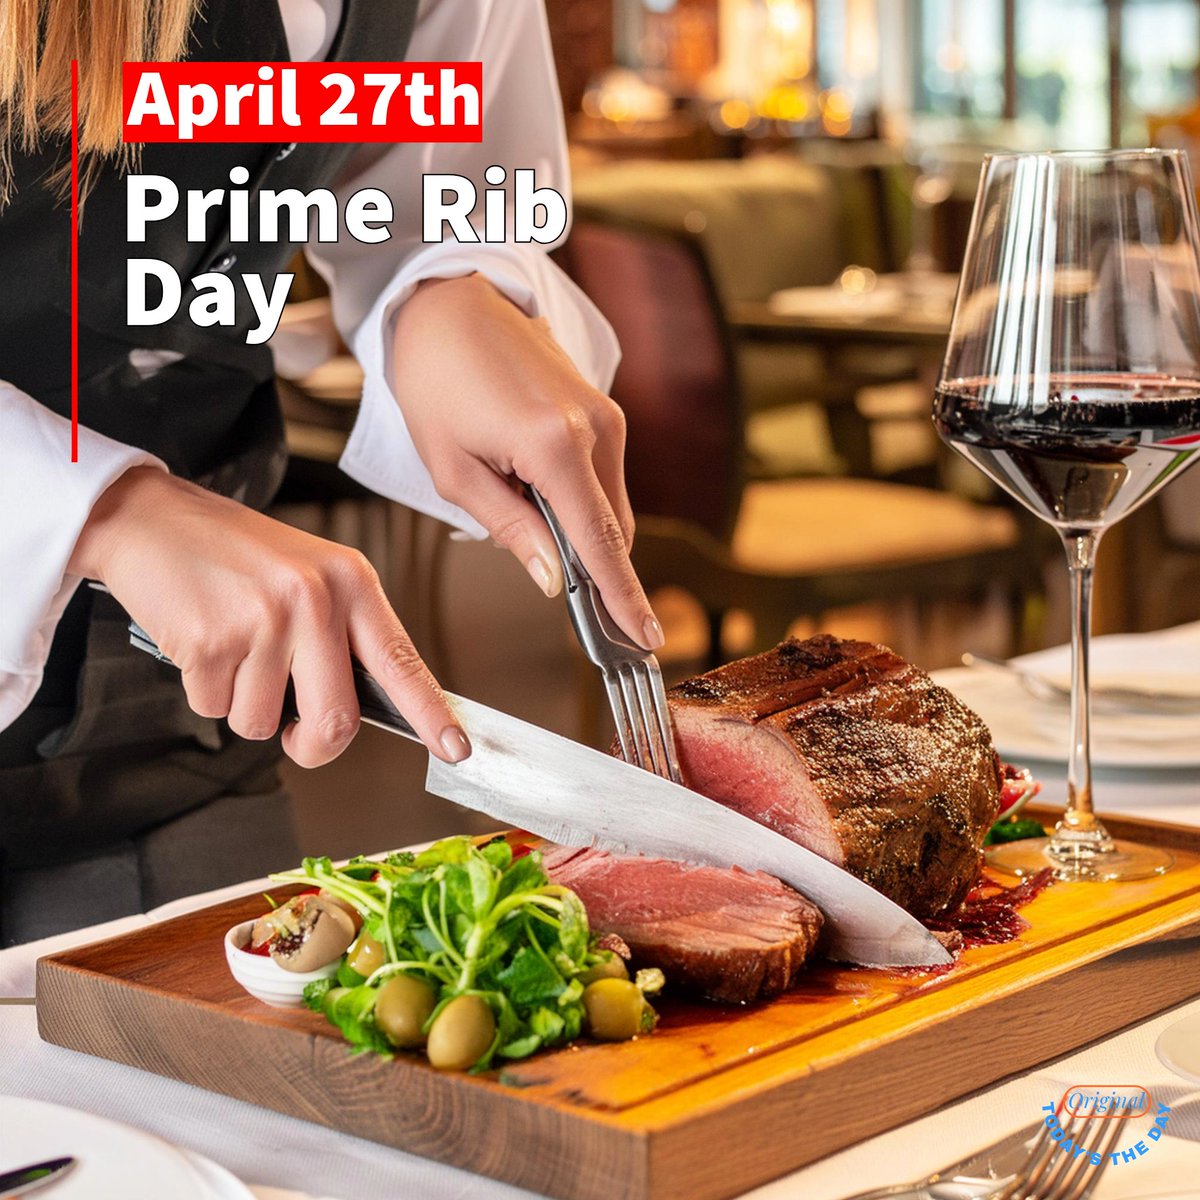 What's for dinner?
It's #primerib day!